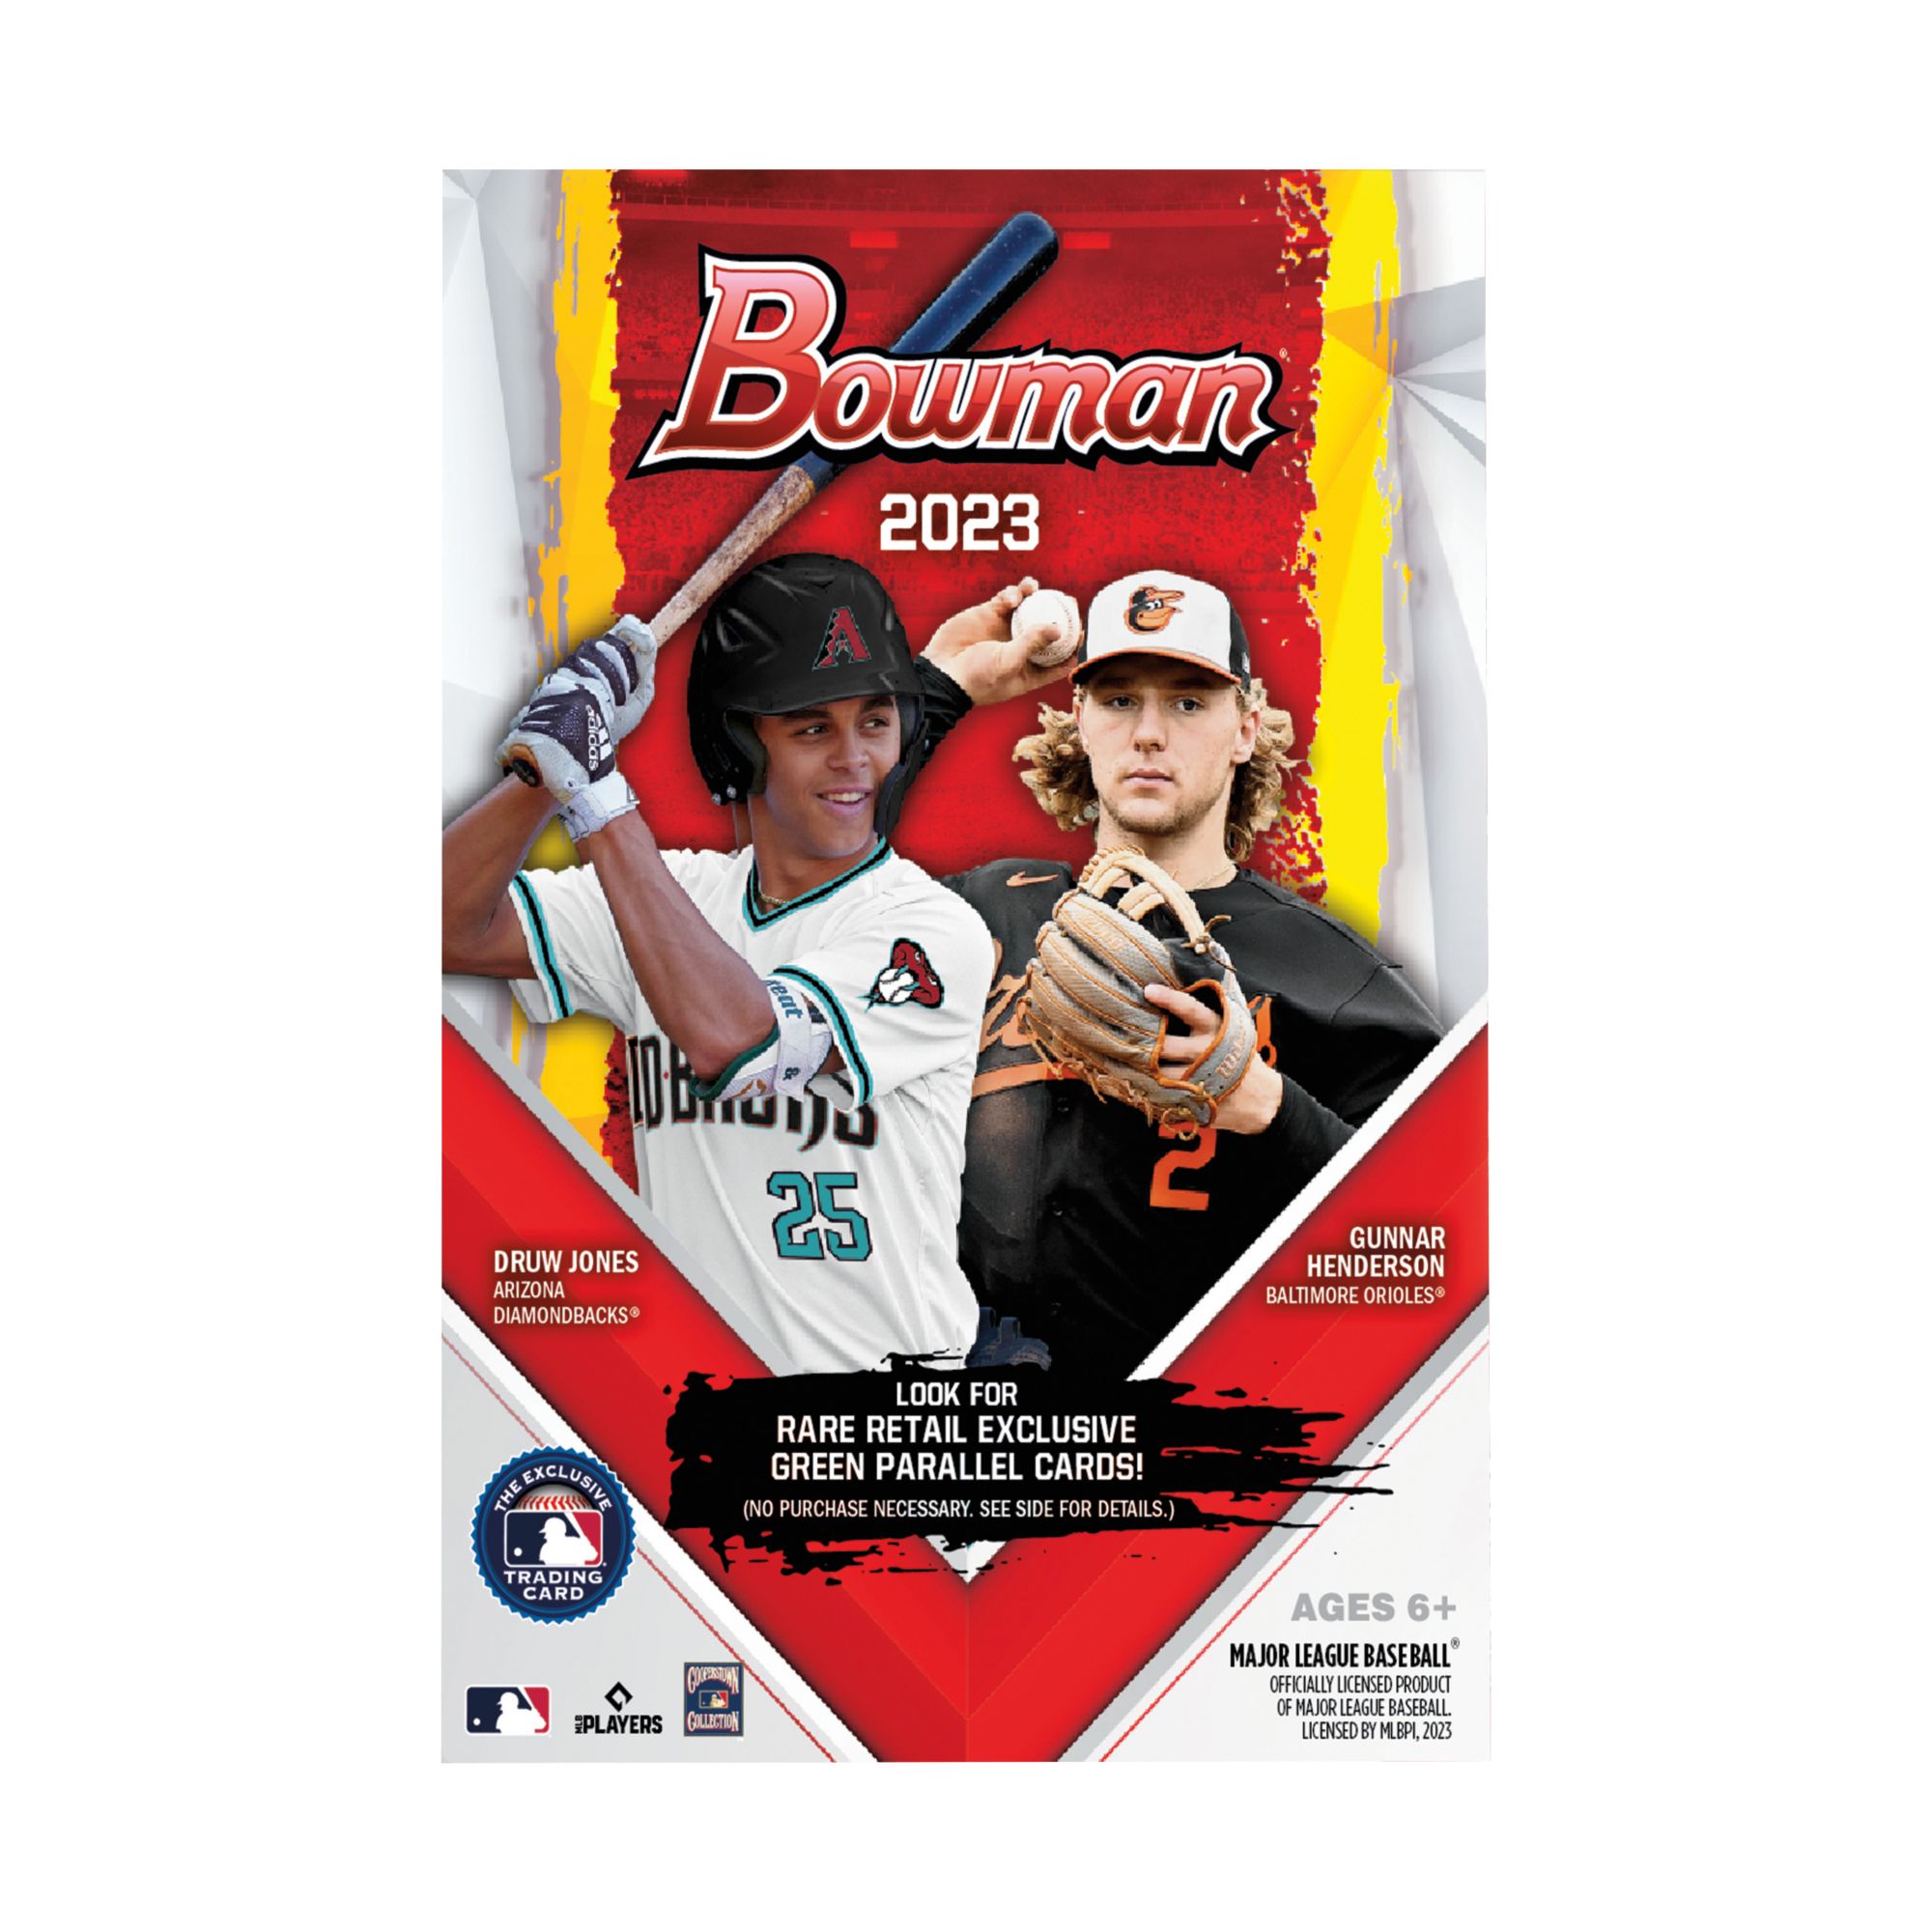 2023 Bowman Baseball Preview